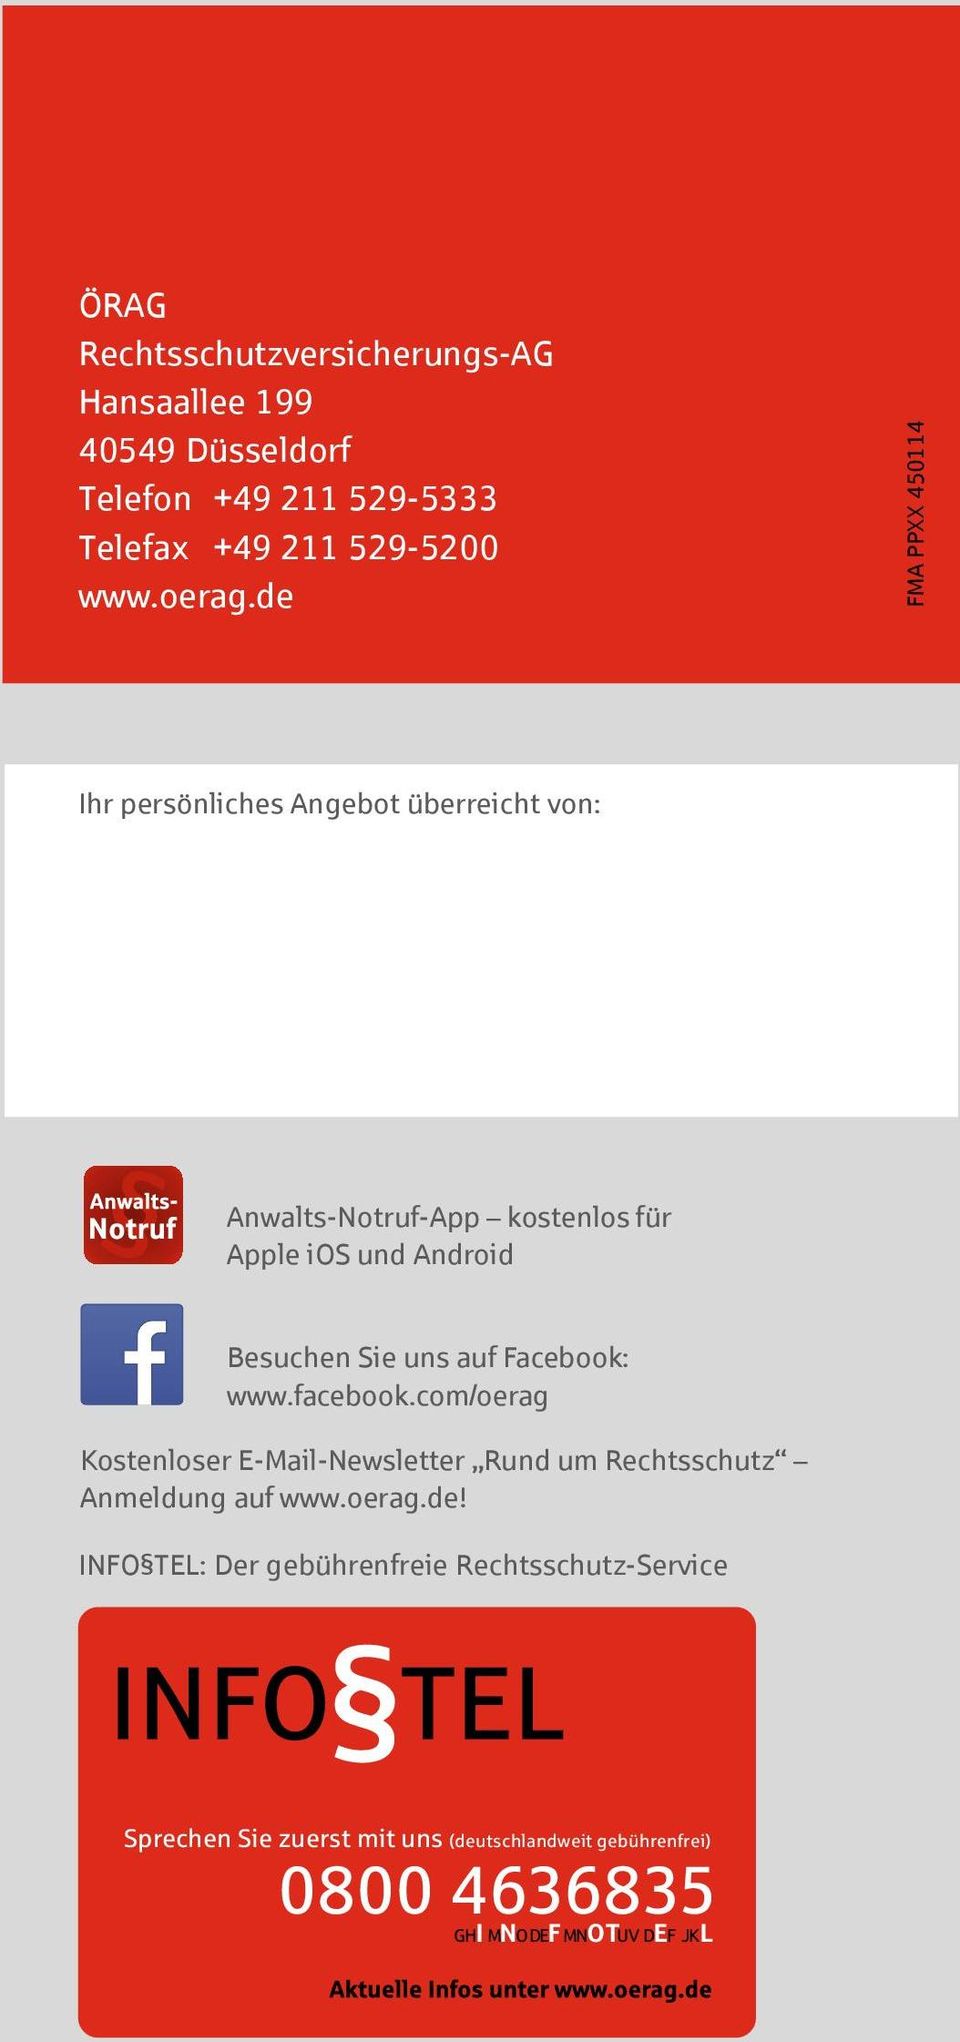 uns auf Facebook: www.facebook.com/oerag Kostenloser E-Mail-Newsletter Rund um Rechtsschutz Anmeldung auf www.oerag.de!